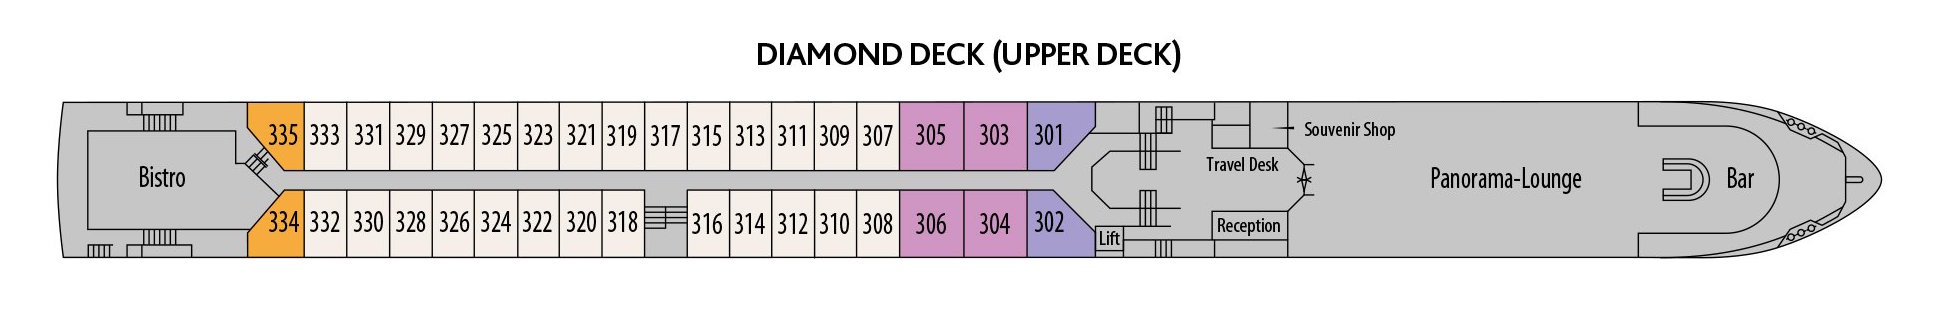 MS Robert Burns-deckplan-Diamond Deck